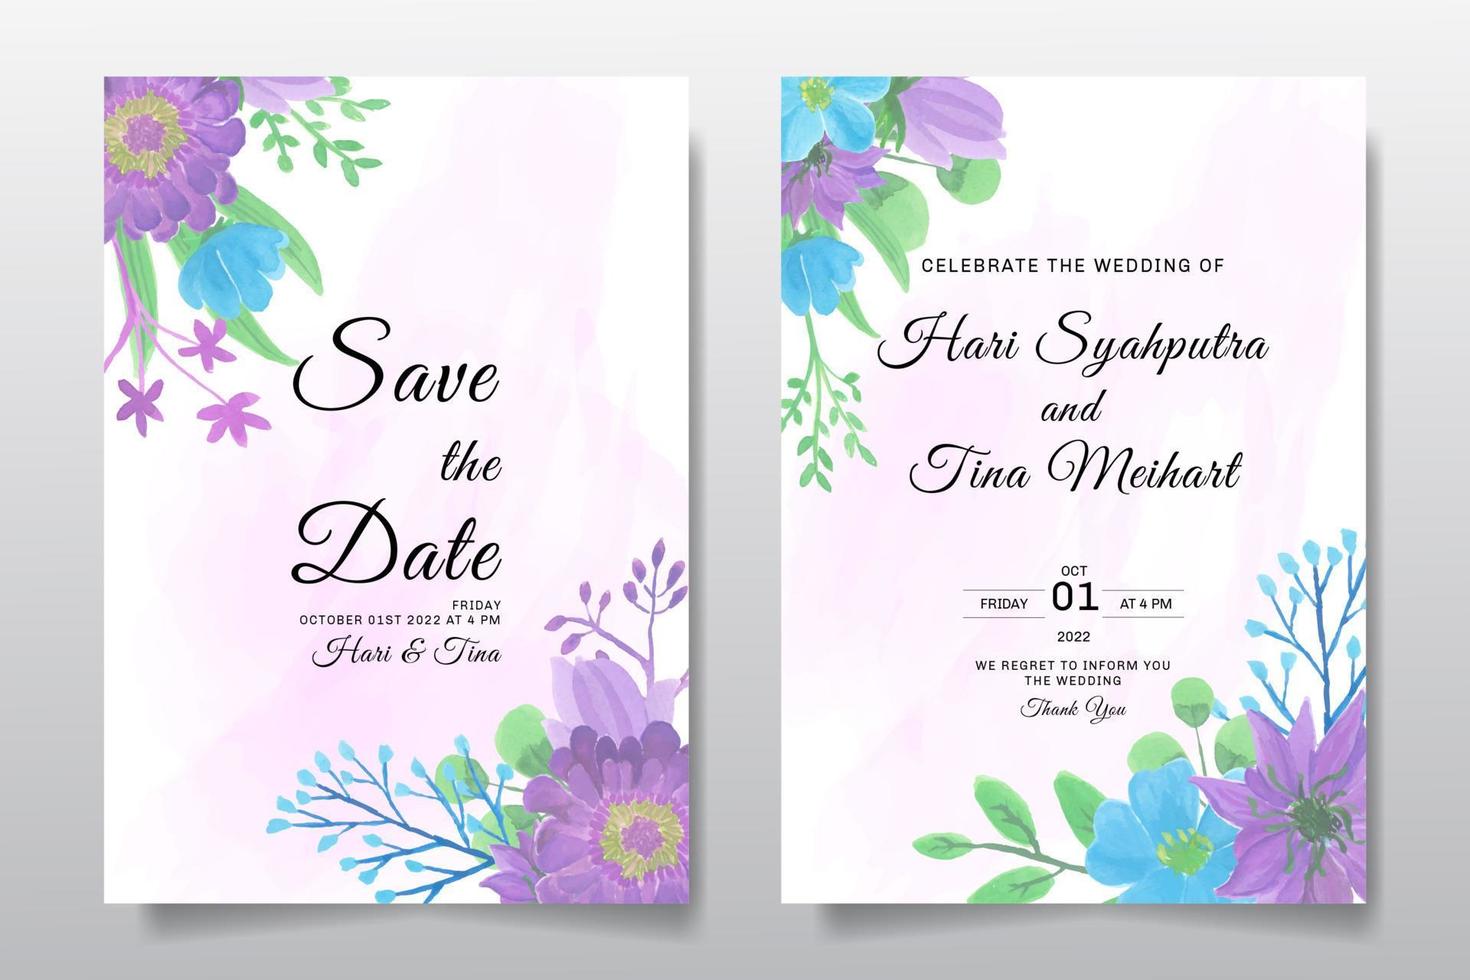 conjunto de invitación de boda tarjeta de felicitación con flores u hojas de color púrpura acuarela vector